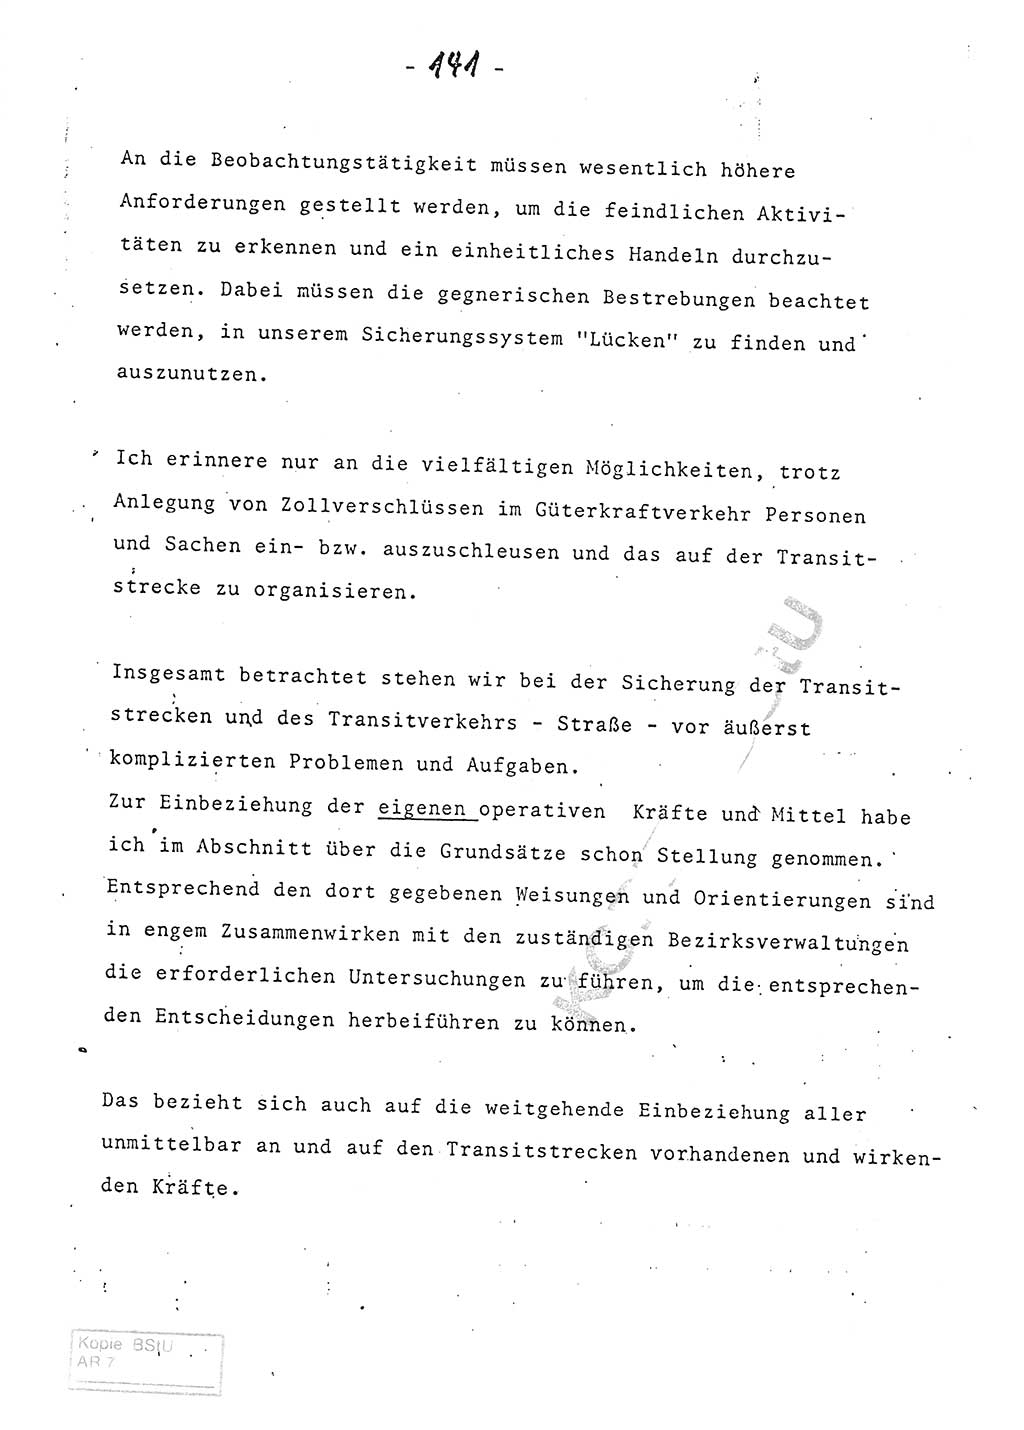 Referat (Entwurf) des Genossen Minister (Generaloberst Erich Mielke) auf der Dienstkonferenz 1972, Ministerium für Staatssicherheit (MfS) [Deutsche Demokratische Republik (DDR)], Der Minister, Geheime Verschlußsache (GVS) 008-150/72, Berlin 25.2.1972, Seite 141 (Ref. Entw. DK MfS DDR Min. GVS 008-150/72 1972, S. 141)